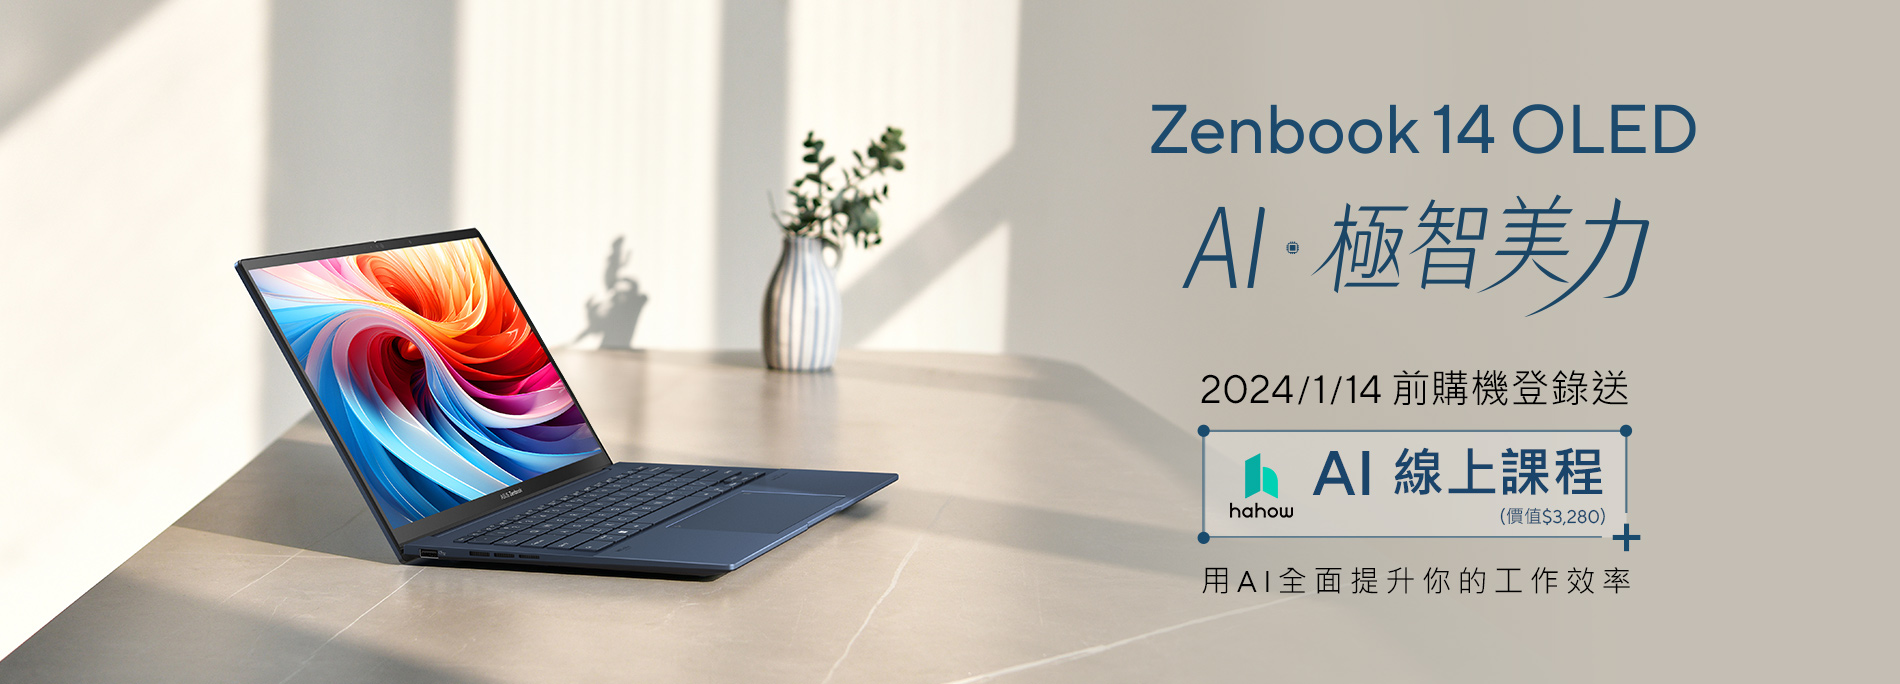 Zenbook 14 OLED 早鳥購機，送「AI 線上課程」，用 AI 全面提升你的工作效率！